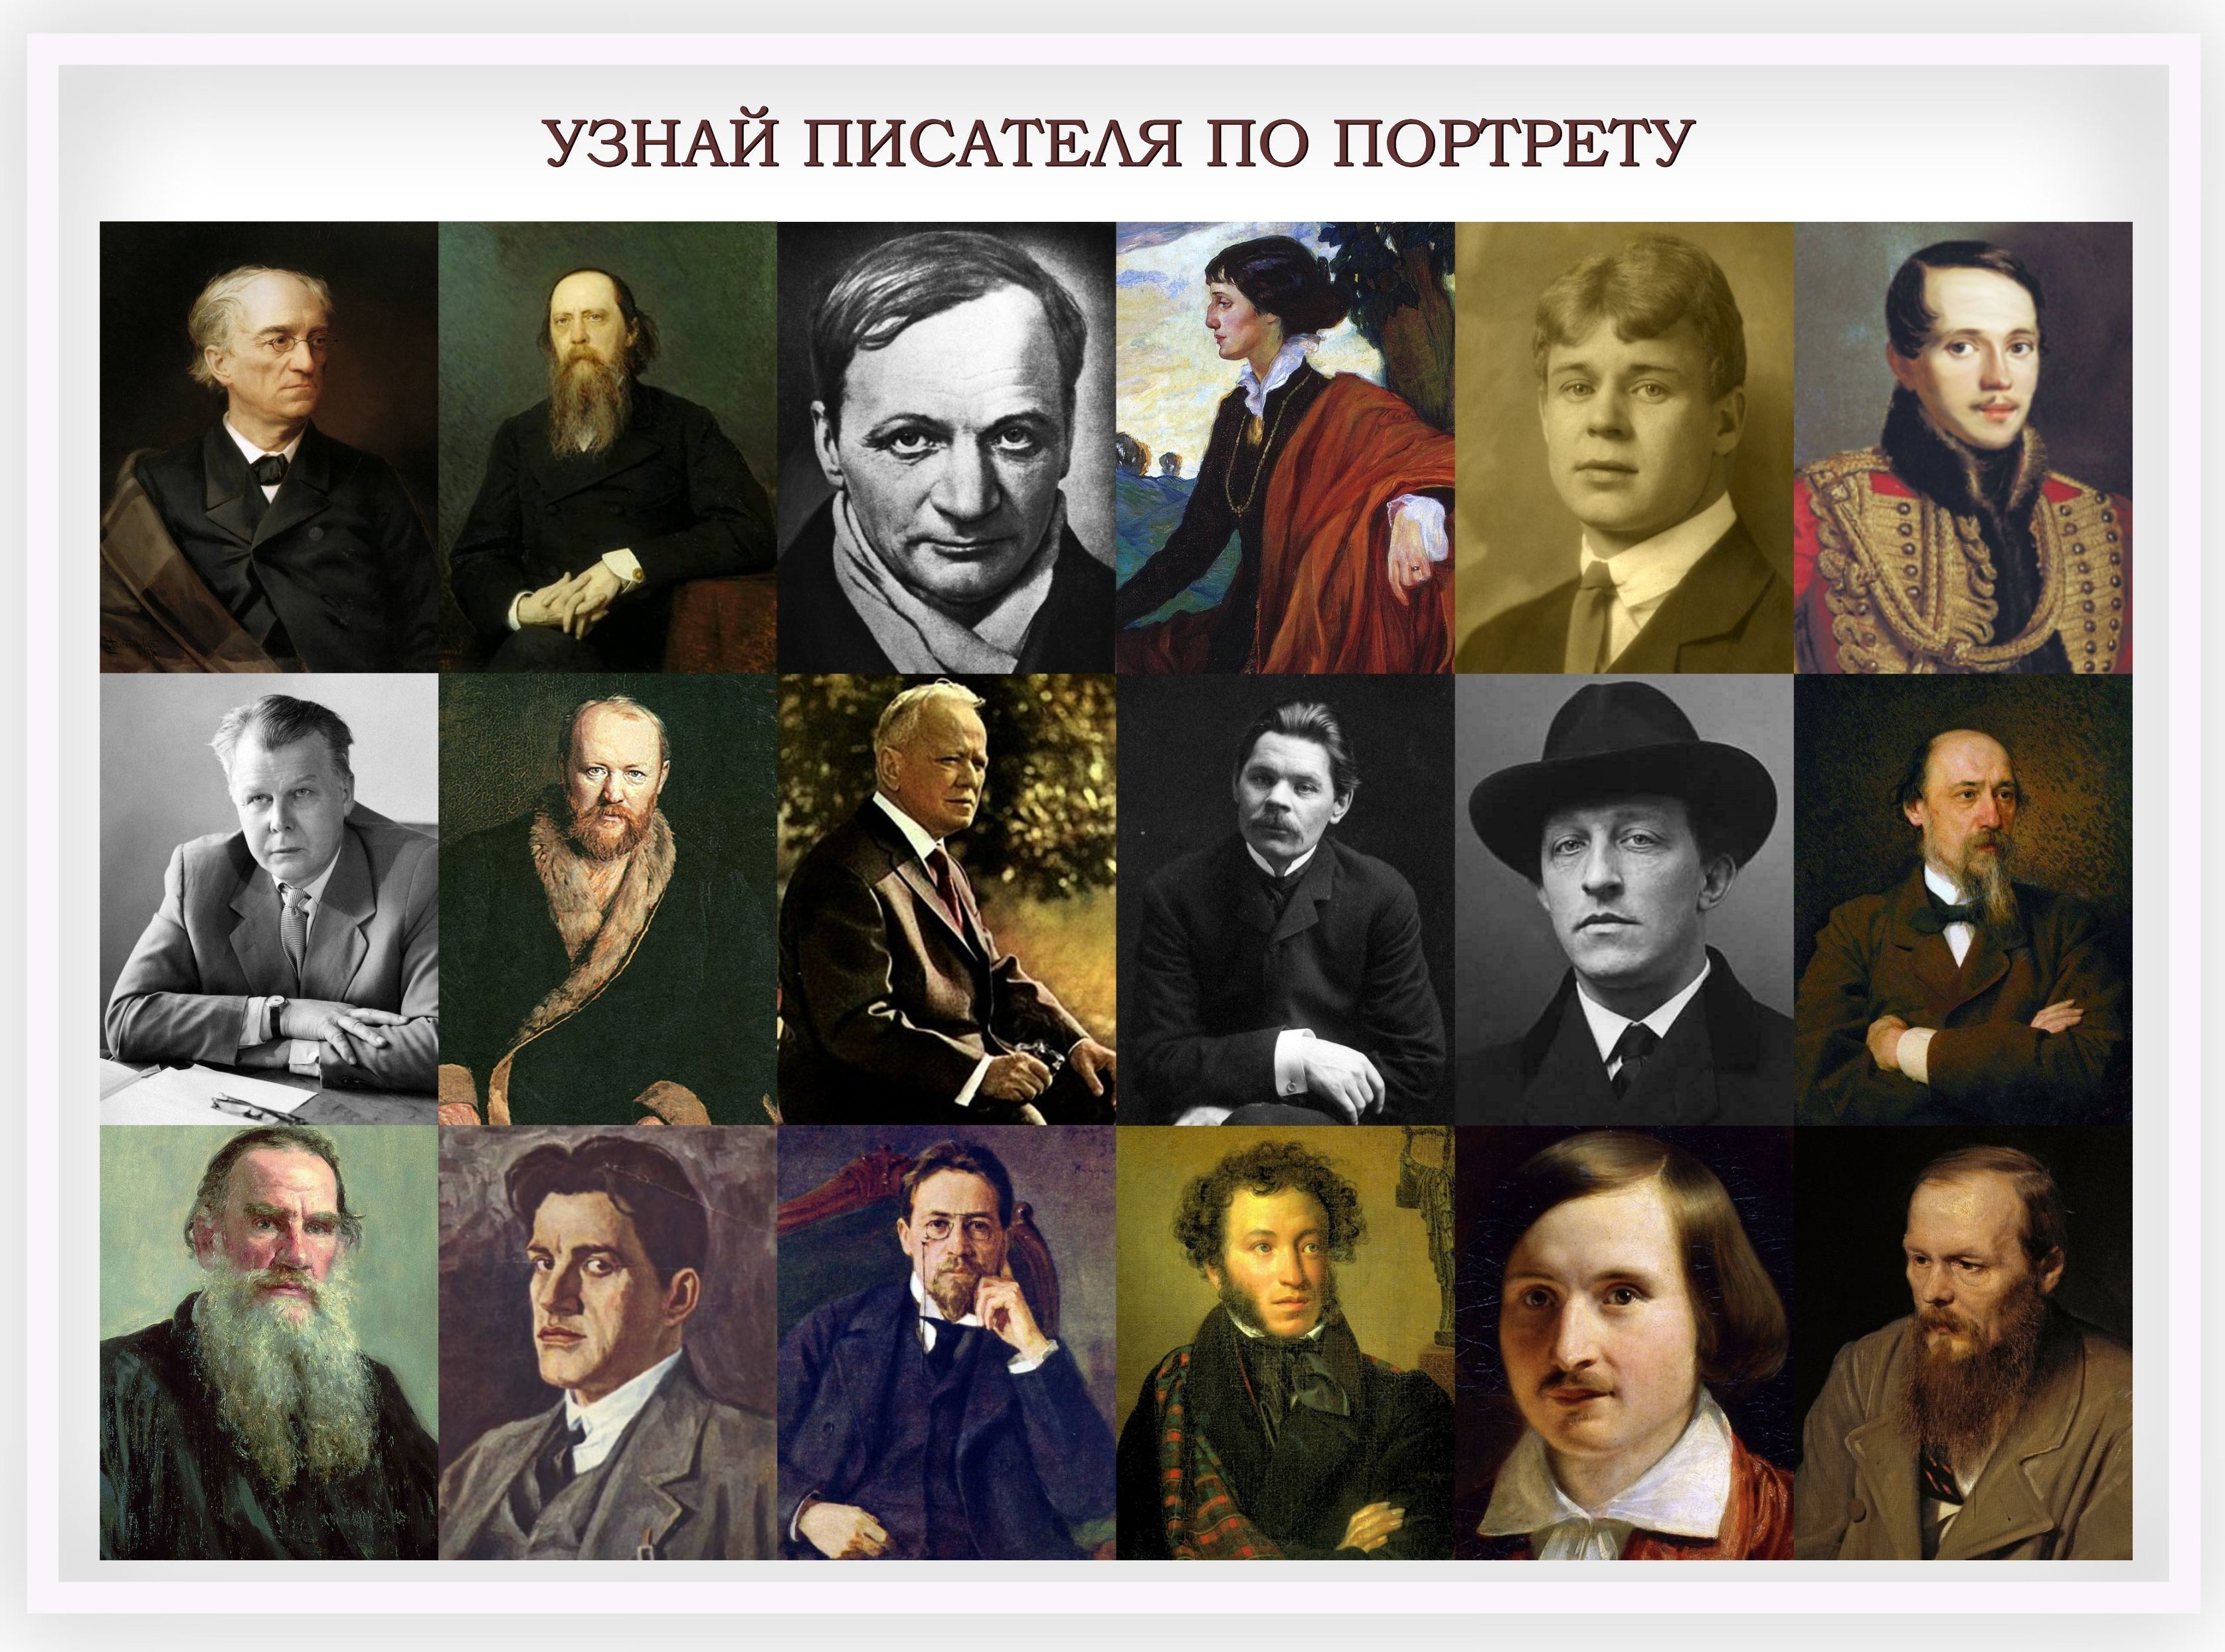 Русские писатели